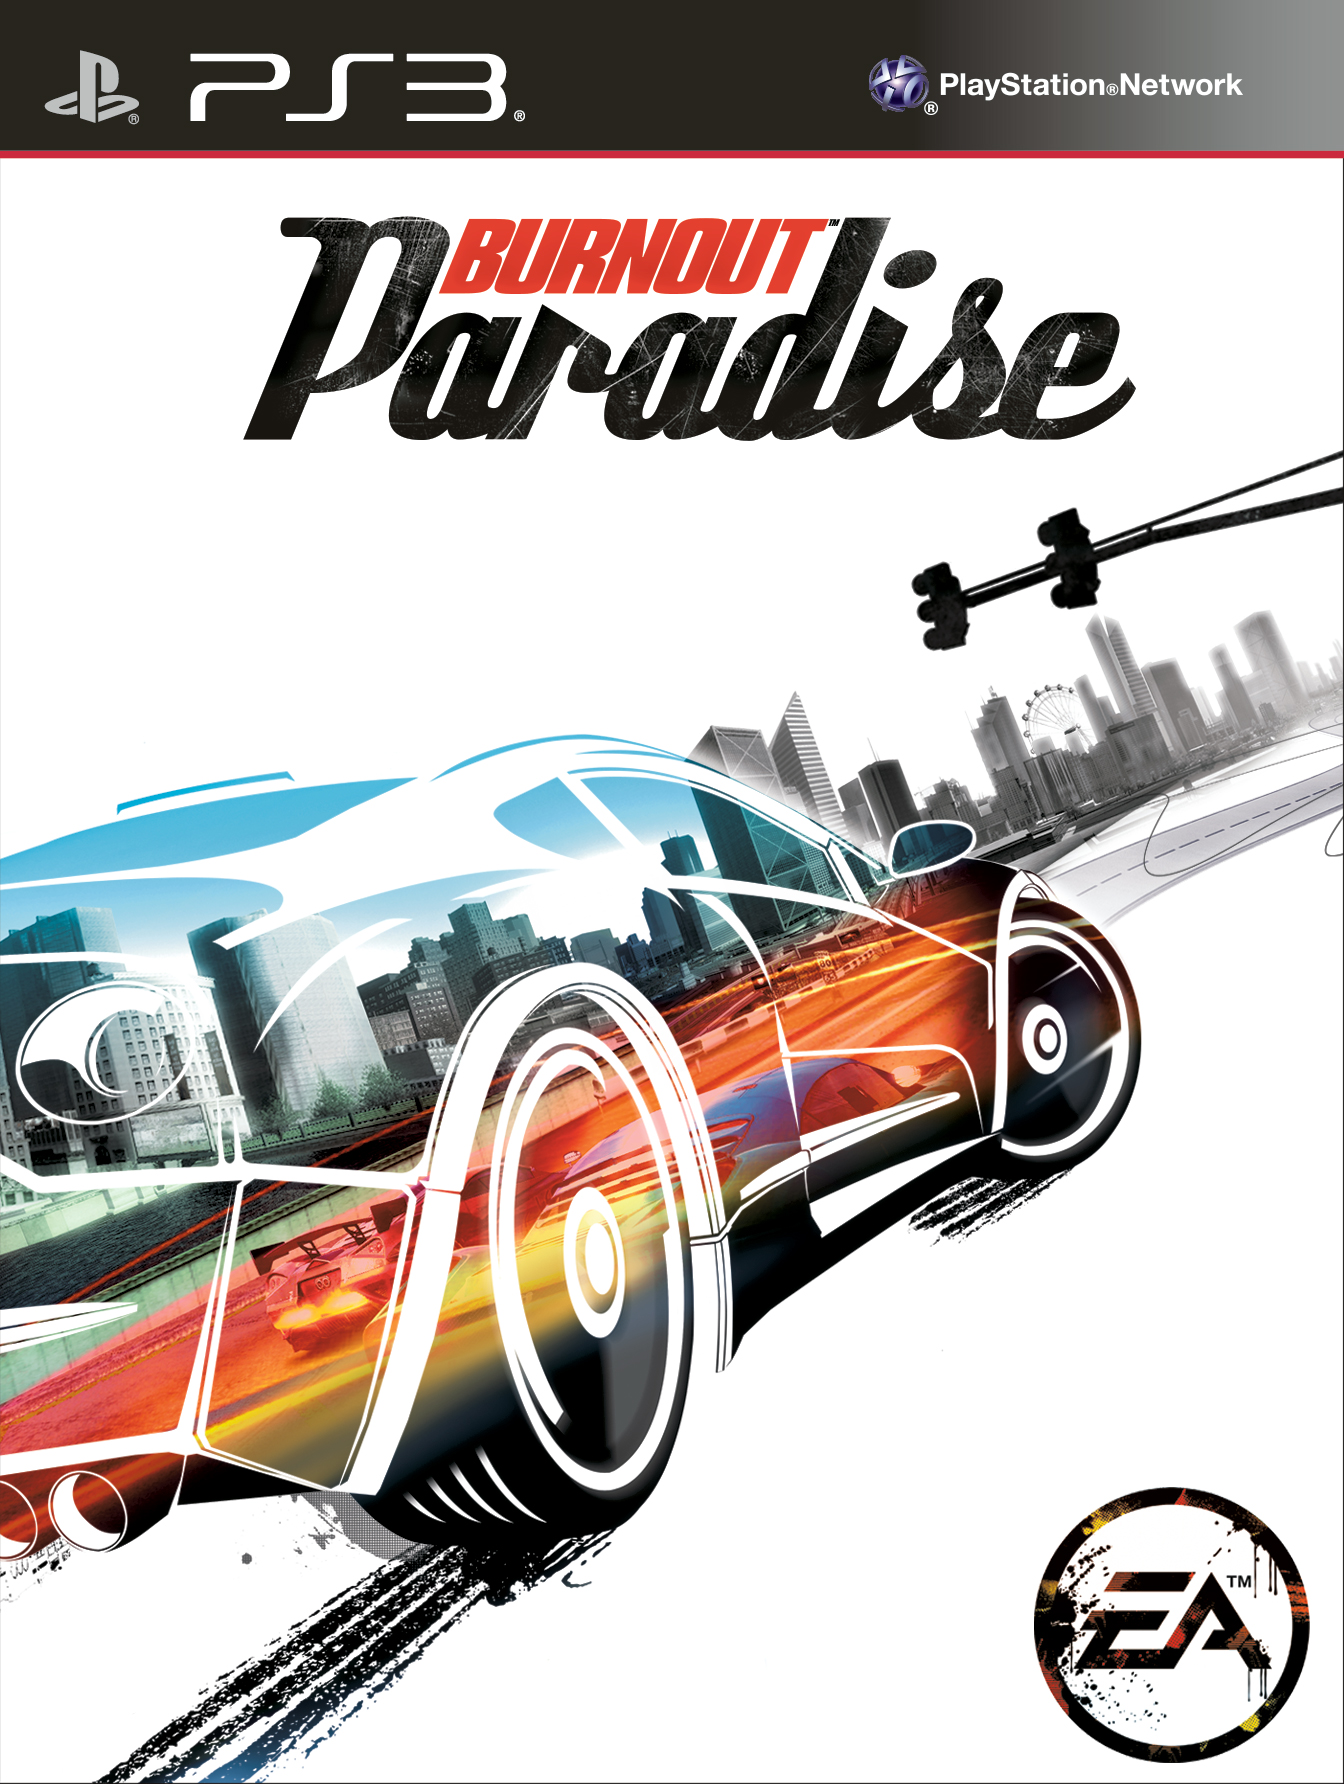 Burnout paradise download pc